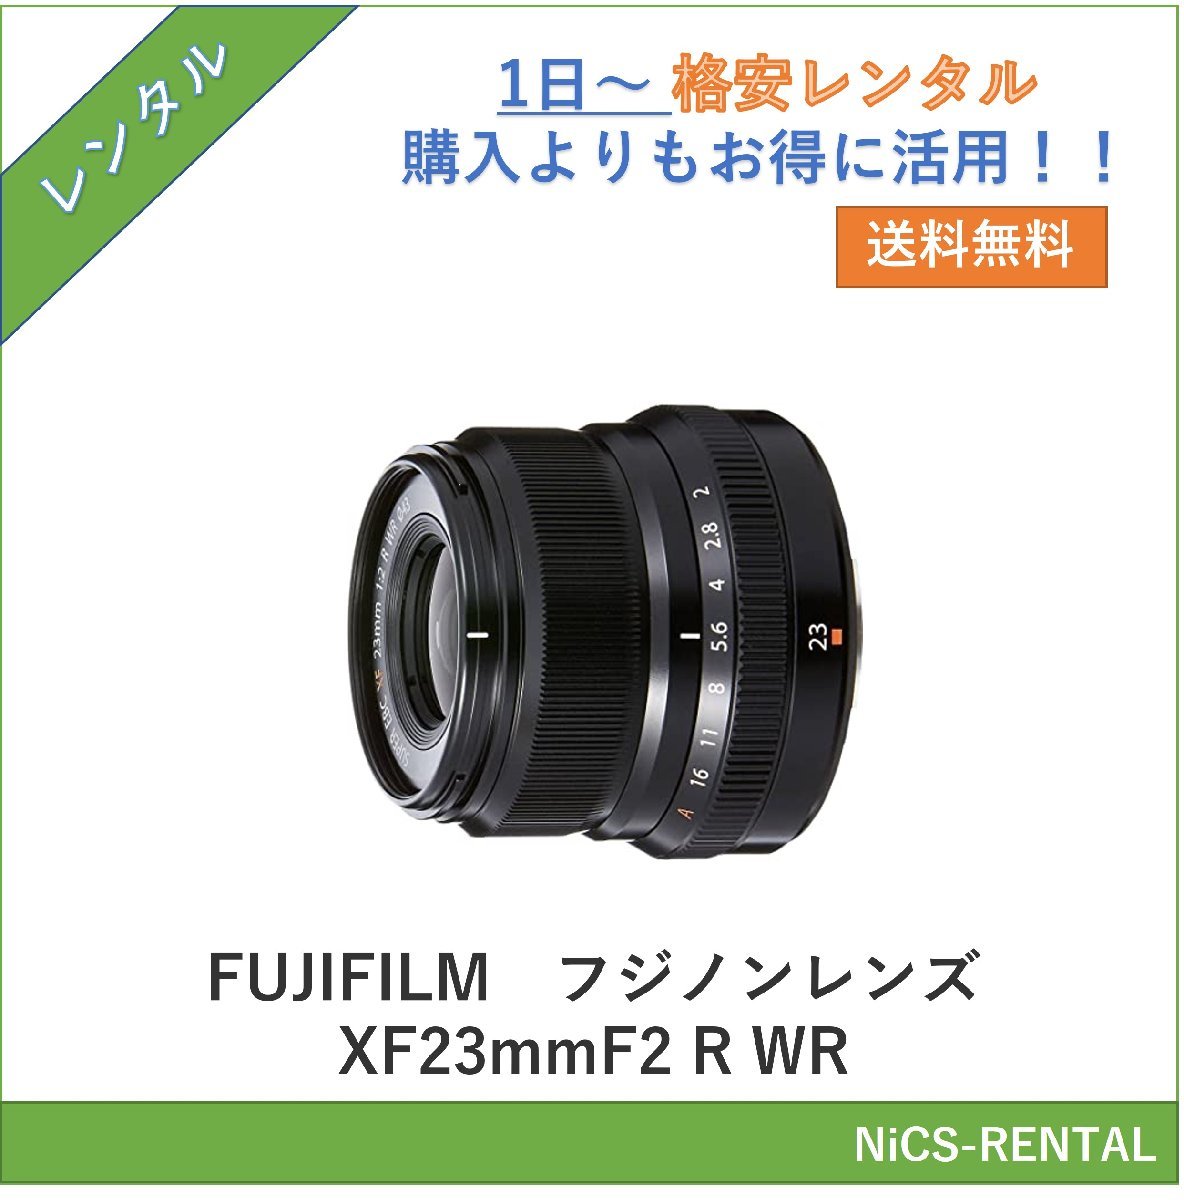  Fuji non линзы XF23mmF2 R WR FUJIFILM линзы цифровой однообъективный зеркальный камера 1 день ~ в аренду бесплатная доставка 